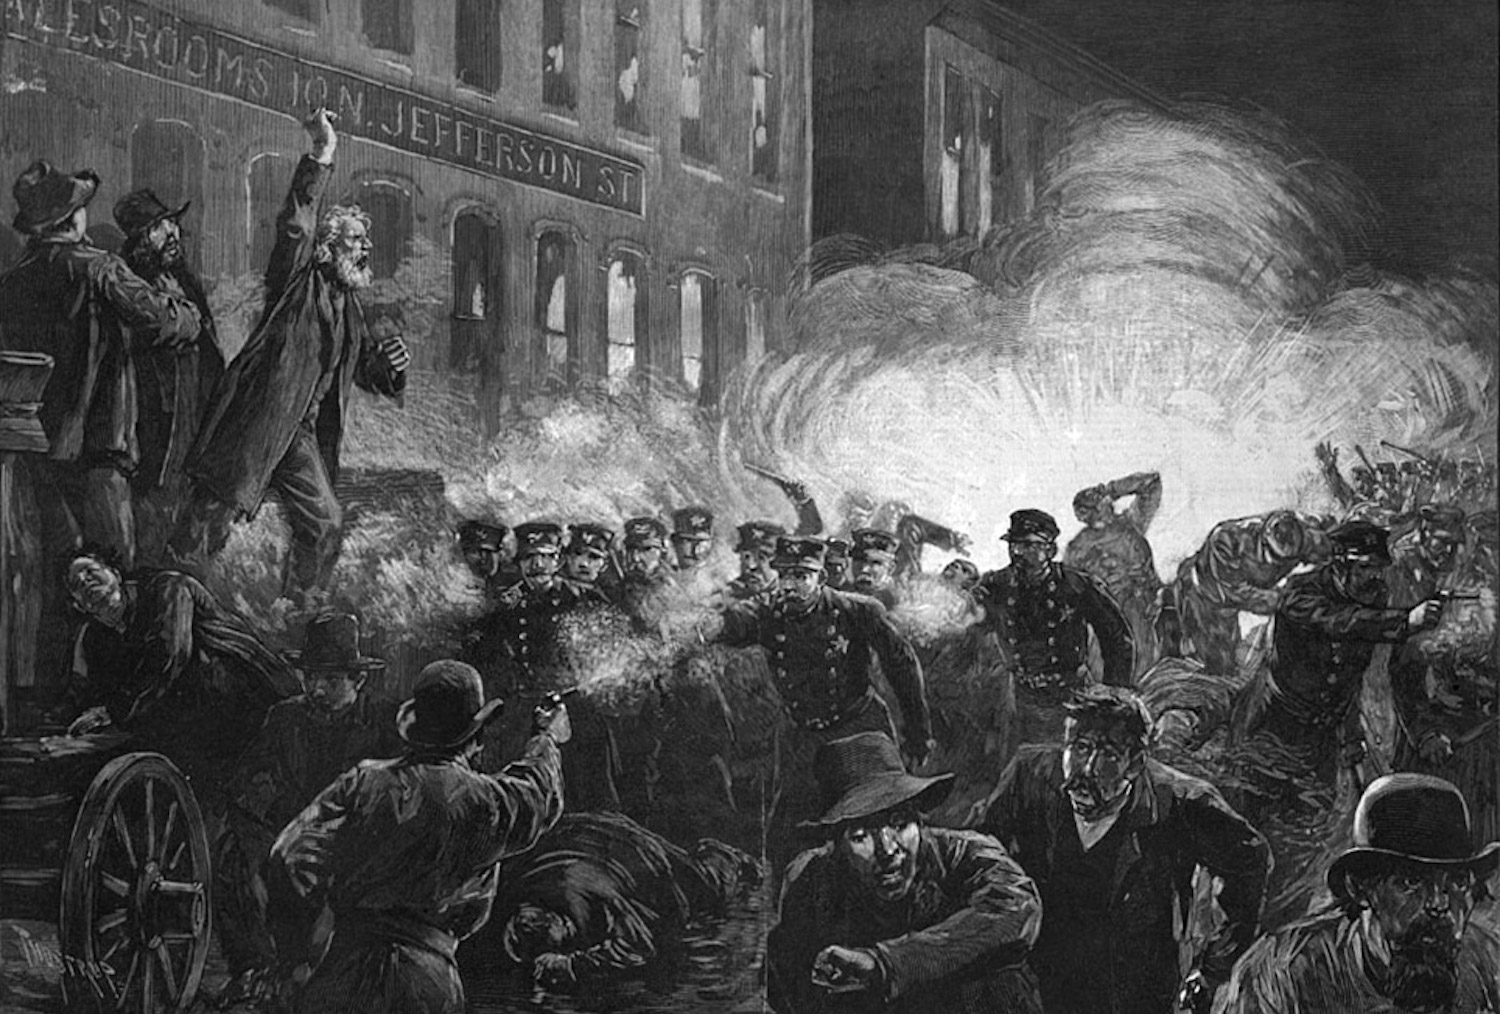 Zeitgenössischer Stich von der Haymarket Riot 1886